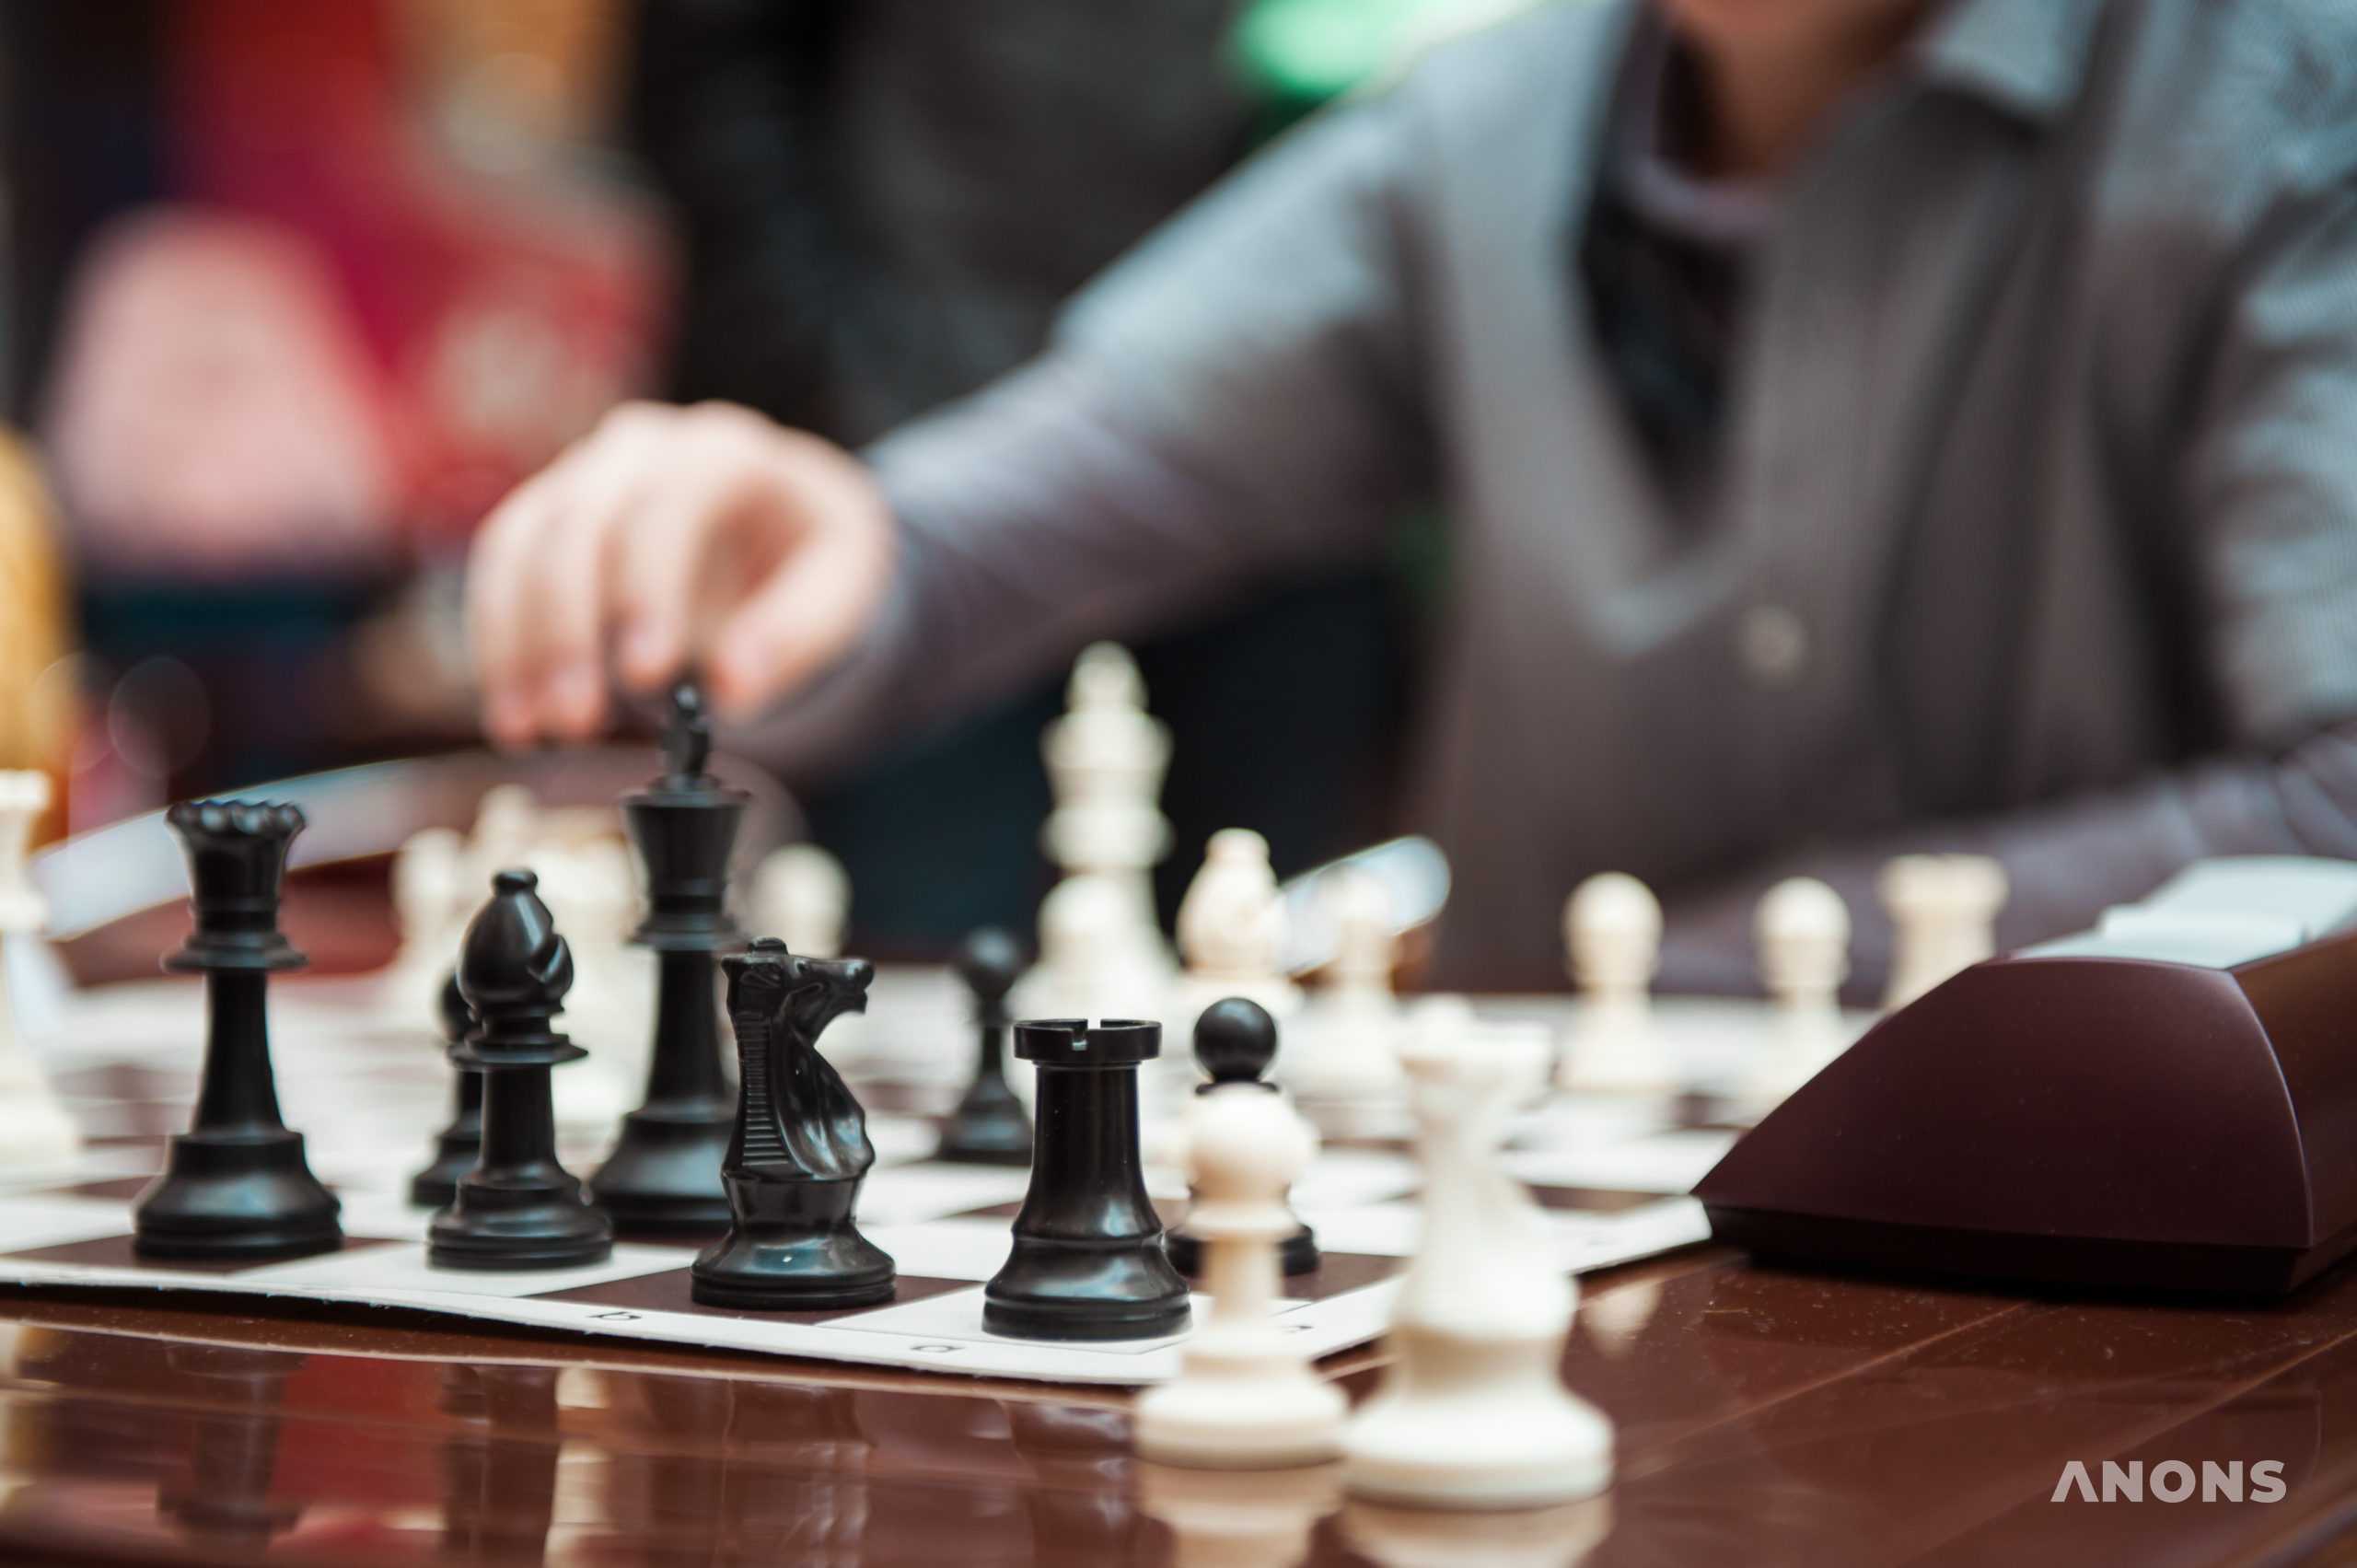 В столице состоится международный шахматный турнир на приз хокима Ташкента